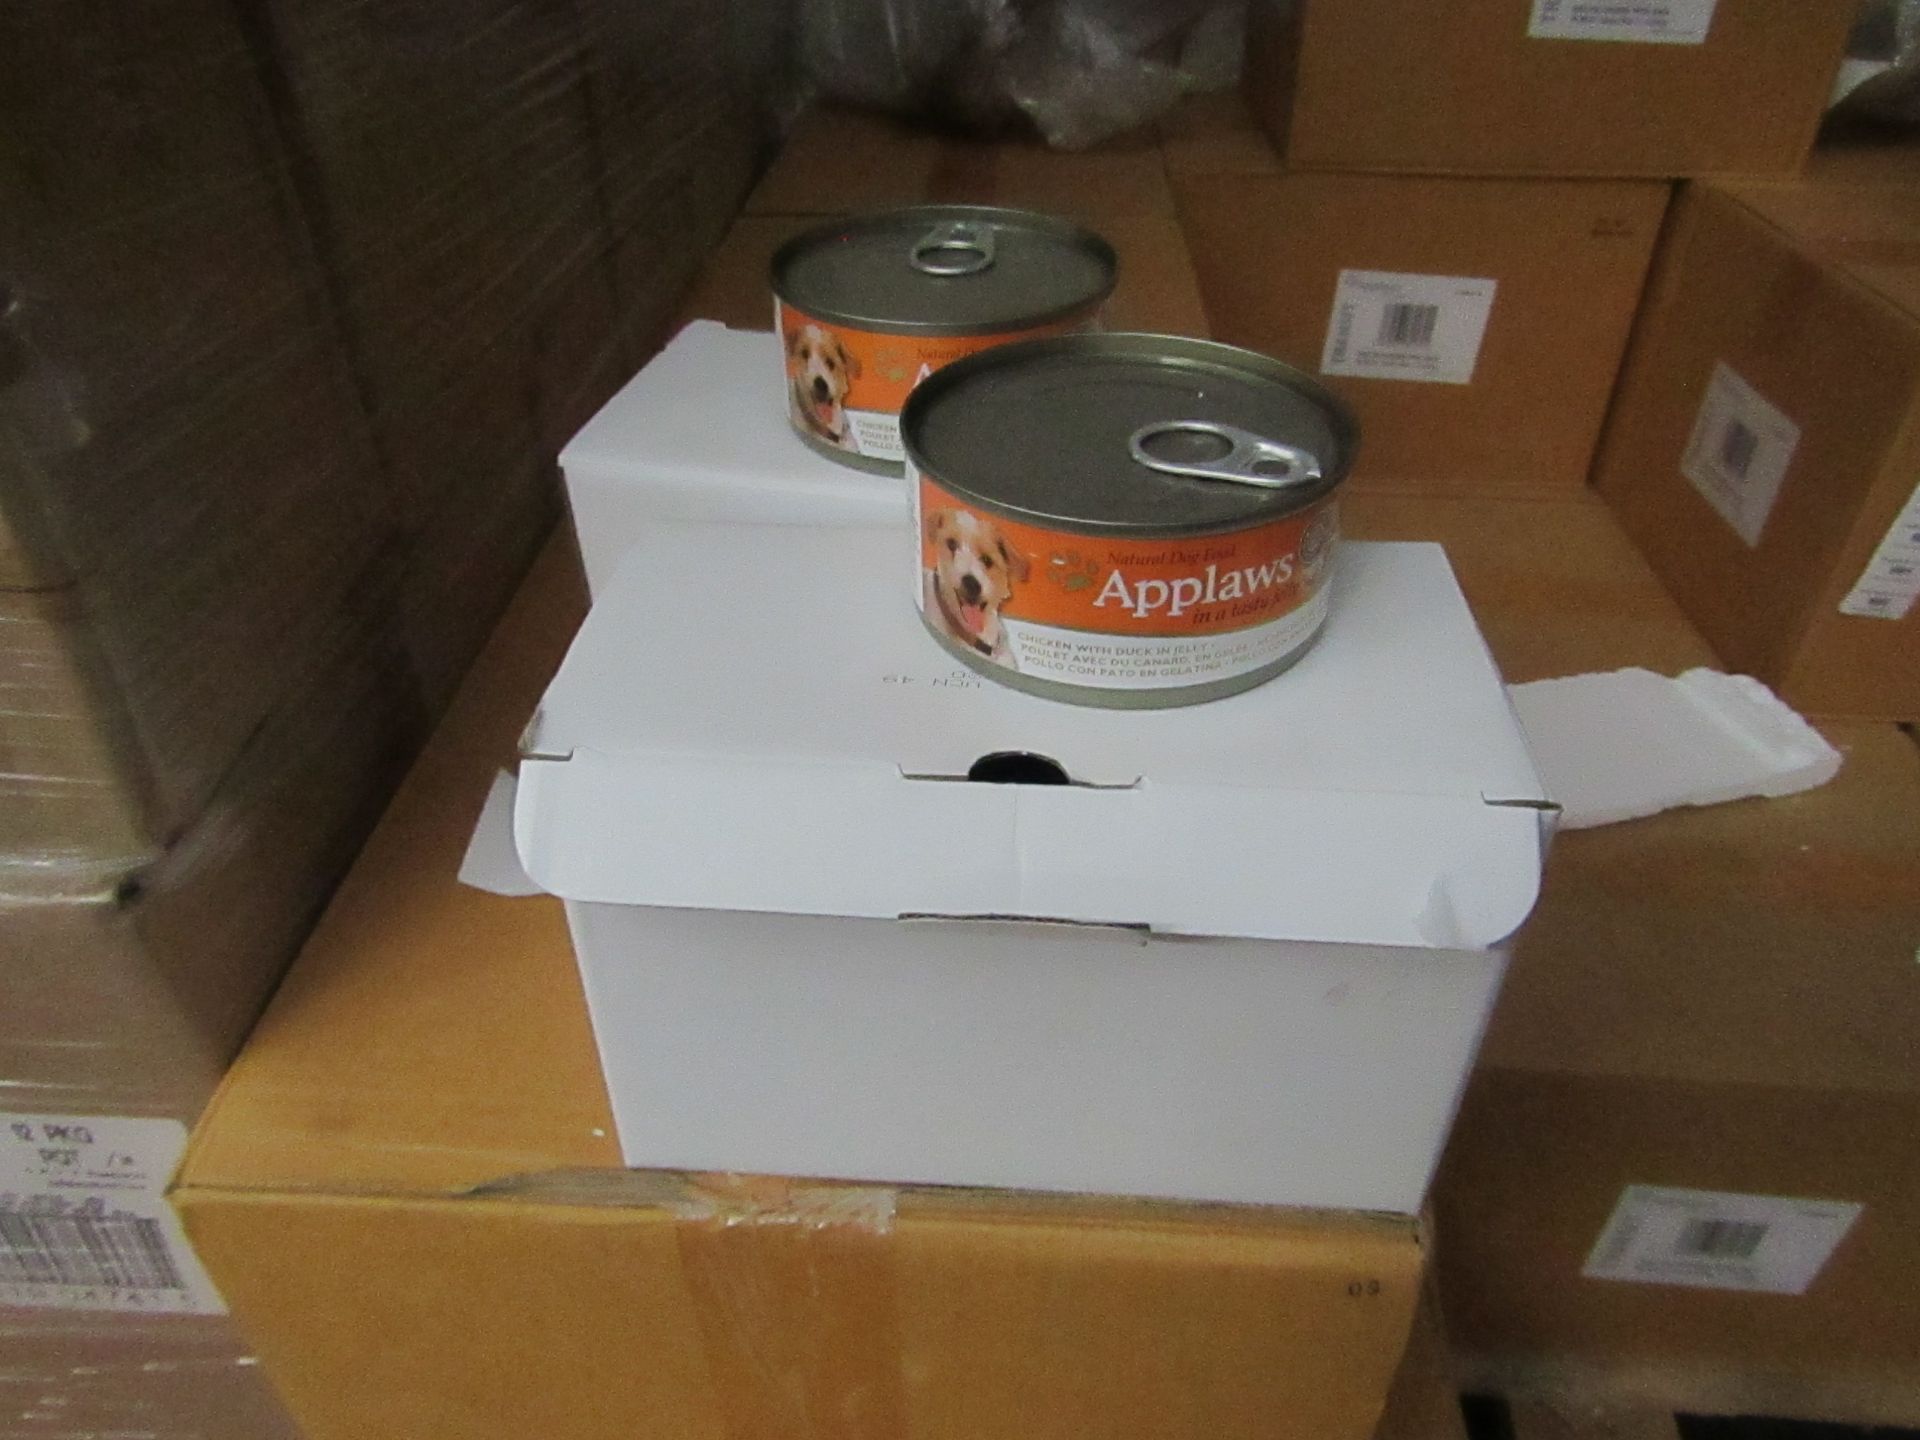 Box of 72x 156g Tins of Applaws dog food, BB Aug 2020